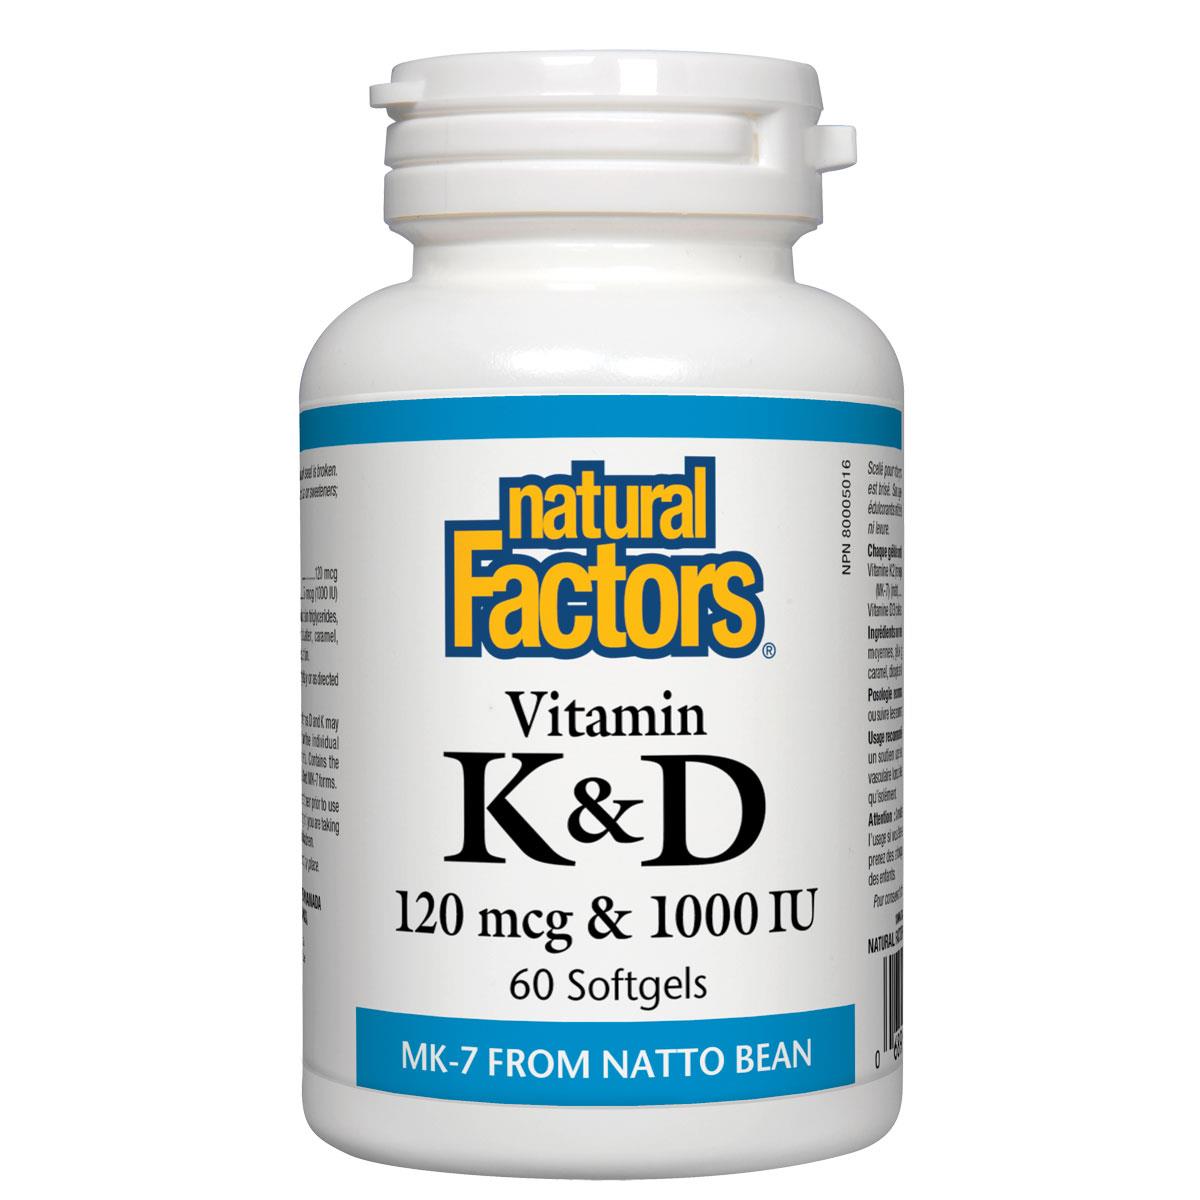 Natural Factors Vitamin K & D, 60 softgels